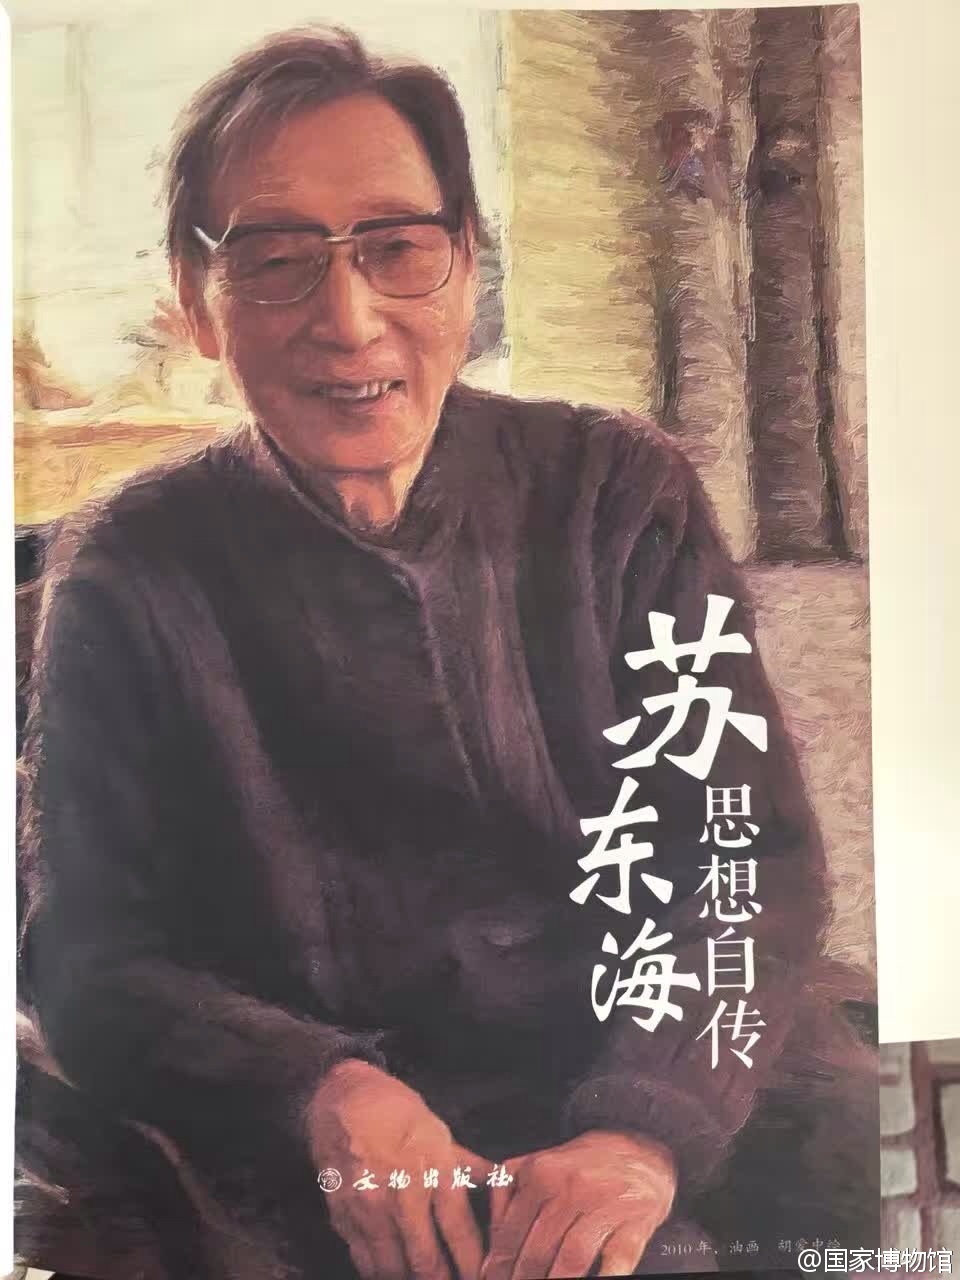 中国生态博物馆之父,"中国博物馆终身成就奖"唯一获得者苏东海逝世